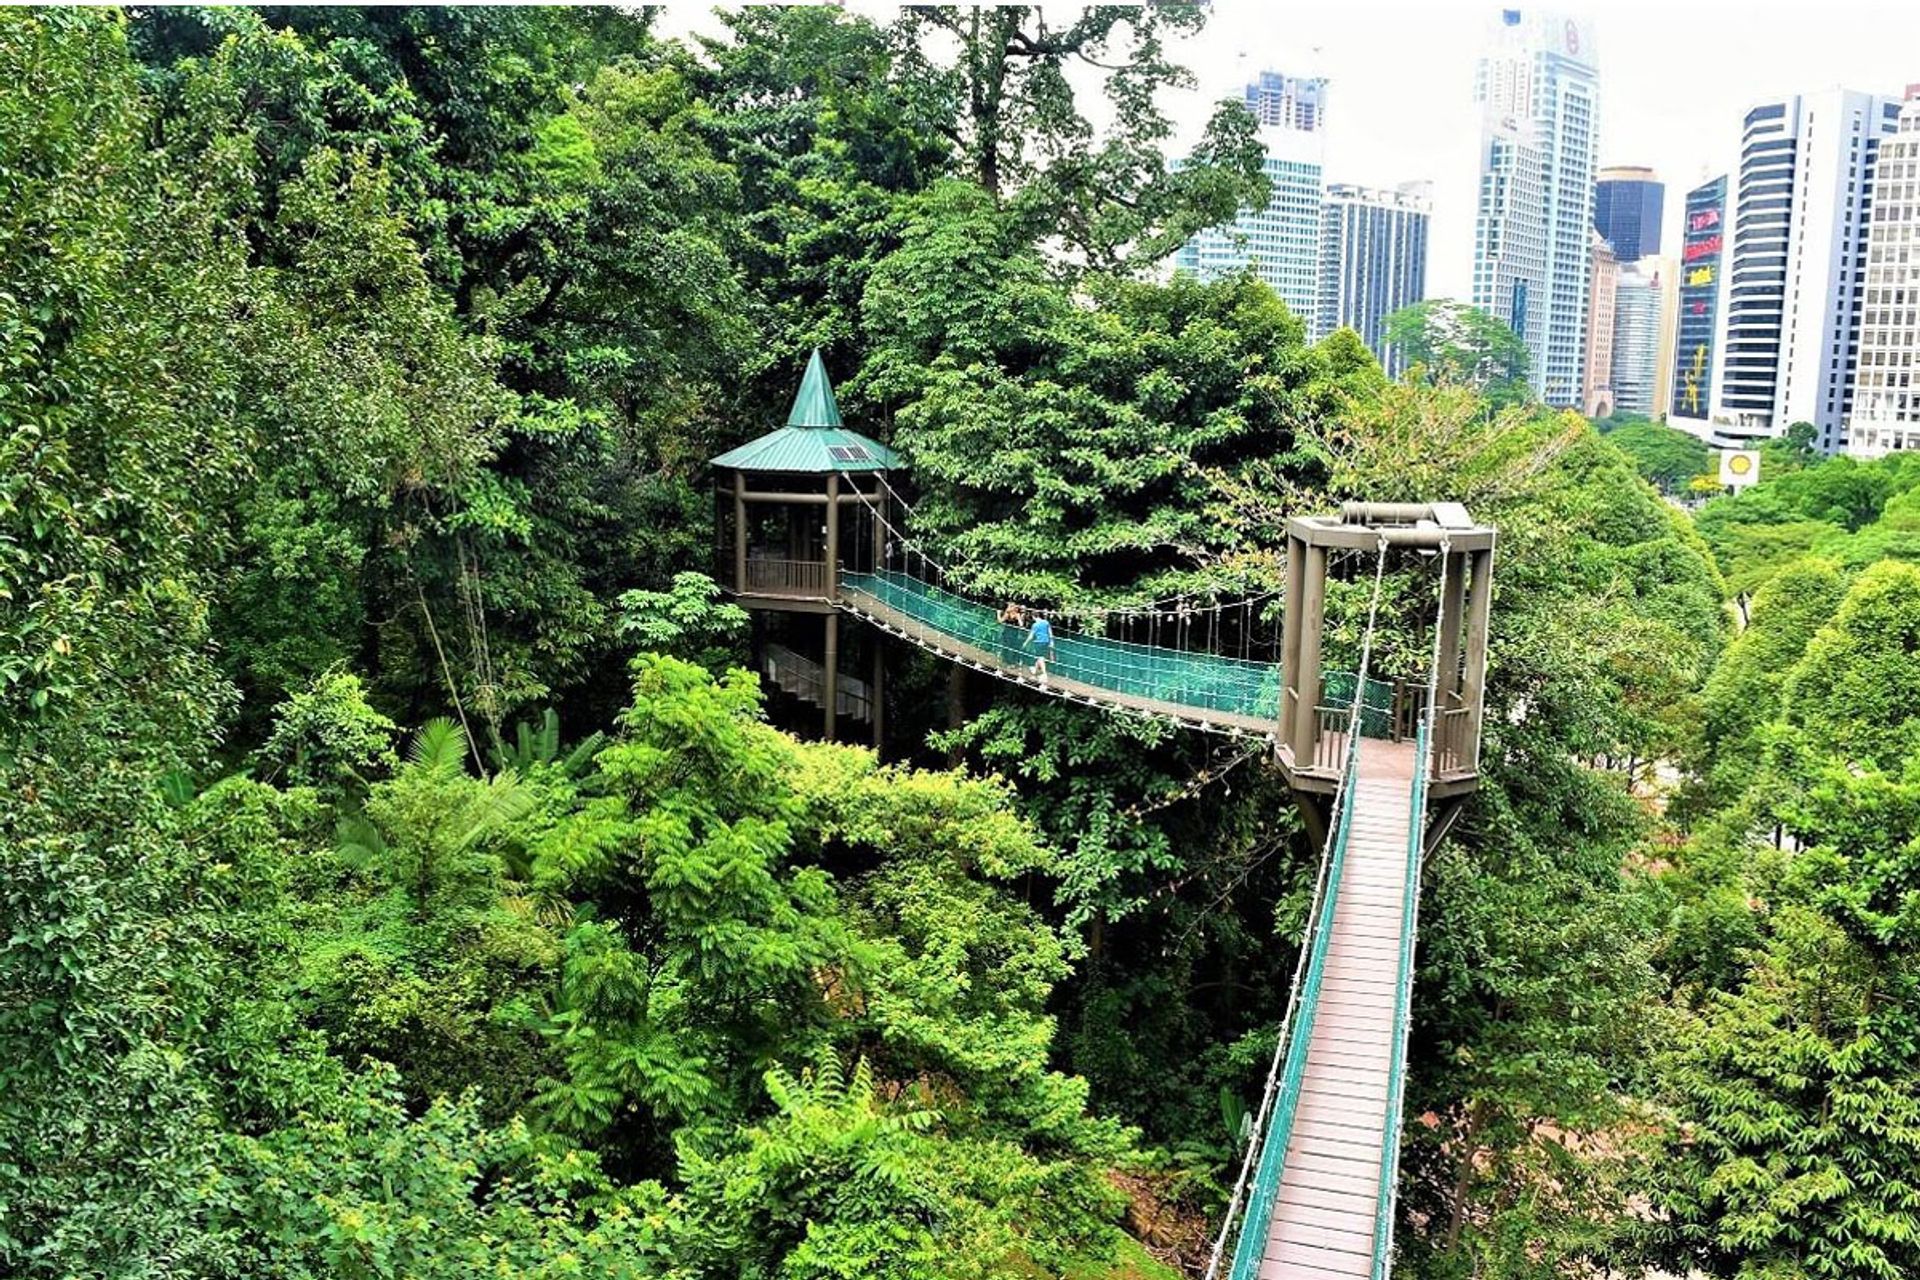     Công viên sinh thái rừng Kuala Lumpur